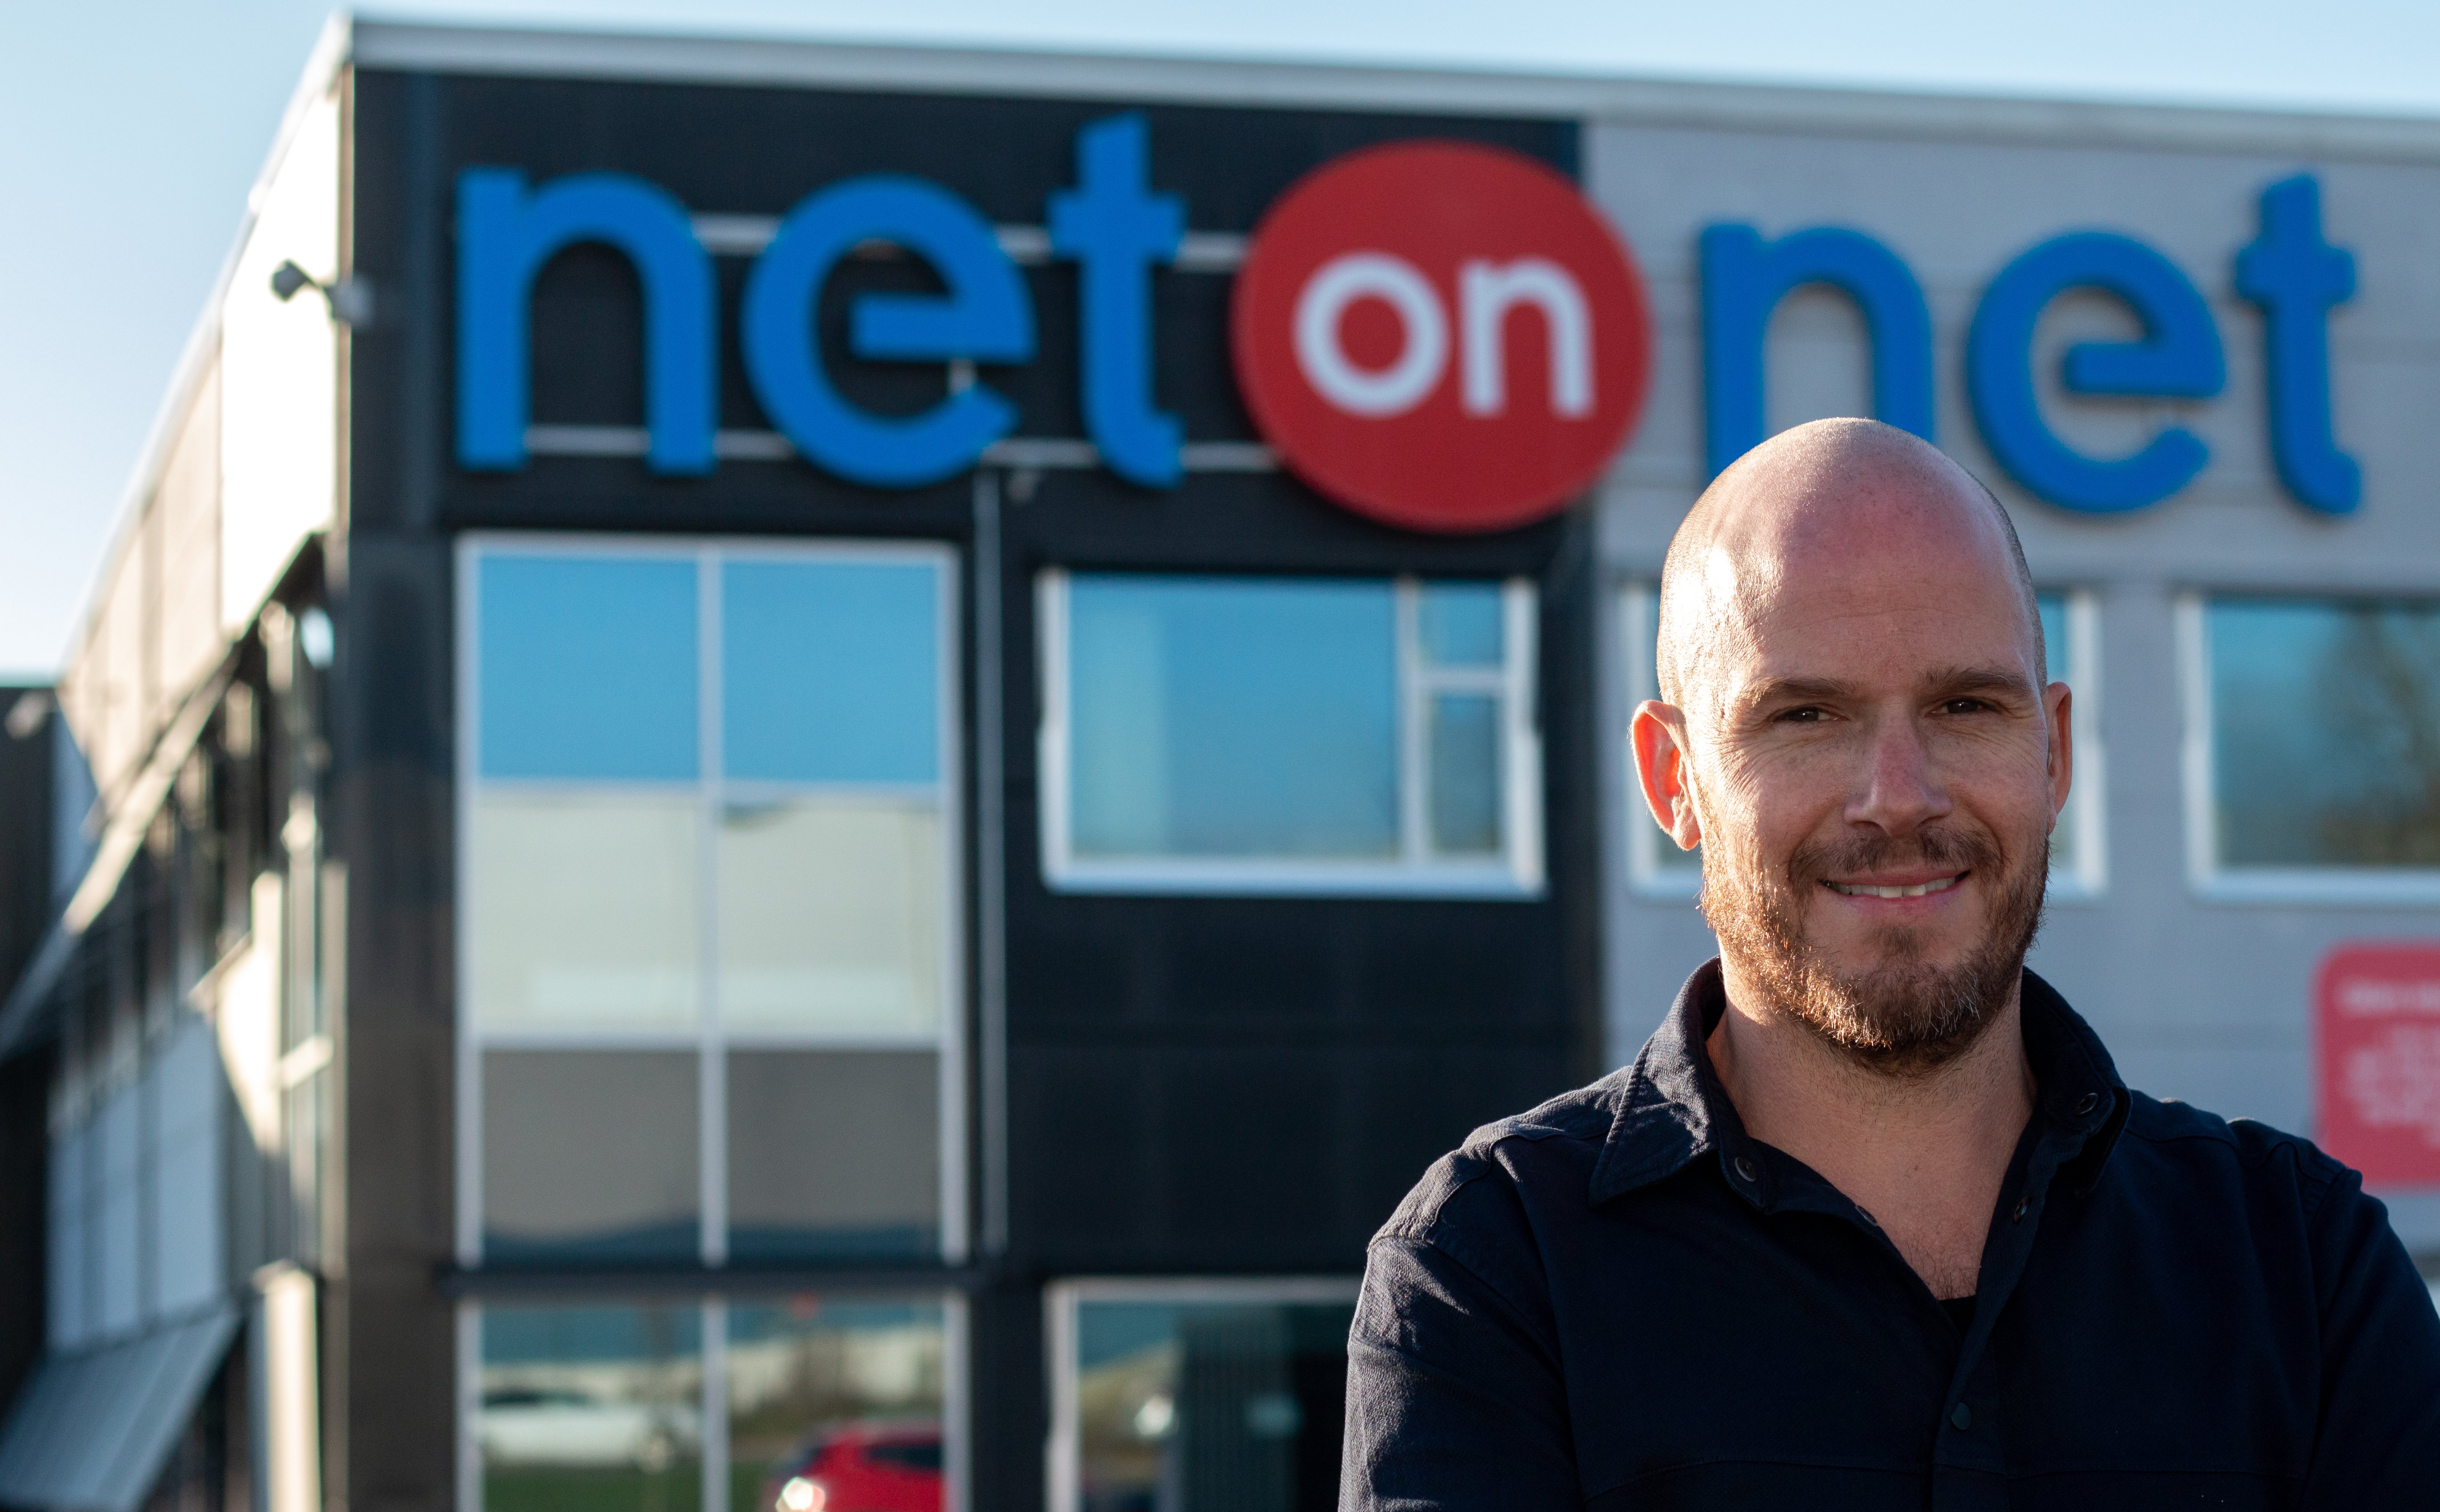 Martin Richardsson blir ny netthandelssjef hos NetonNet